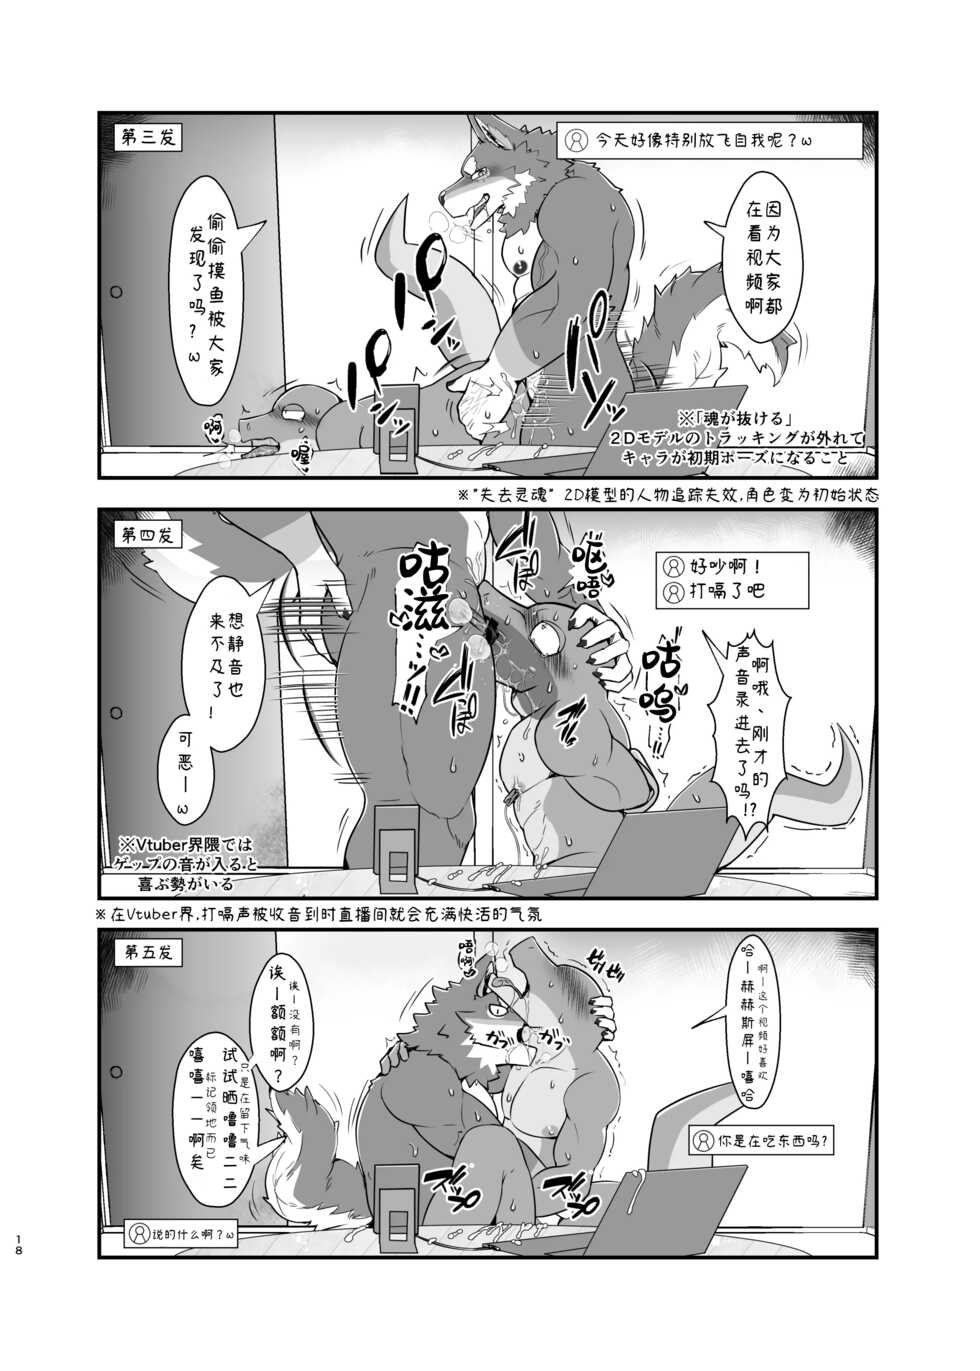 [灰濁クロム (BK-Mita)]我说、你很喜欢大哥我吧？ [电子版]【夜狗个人汉化】 - Page 19